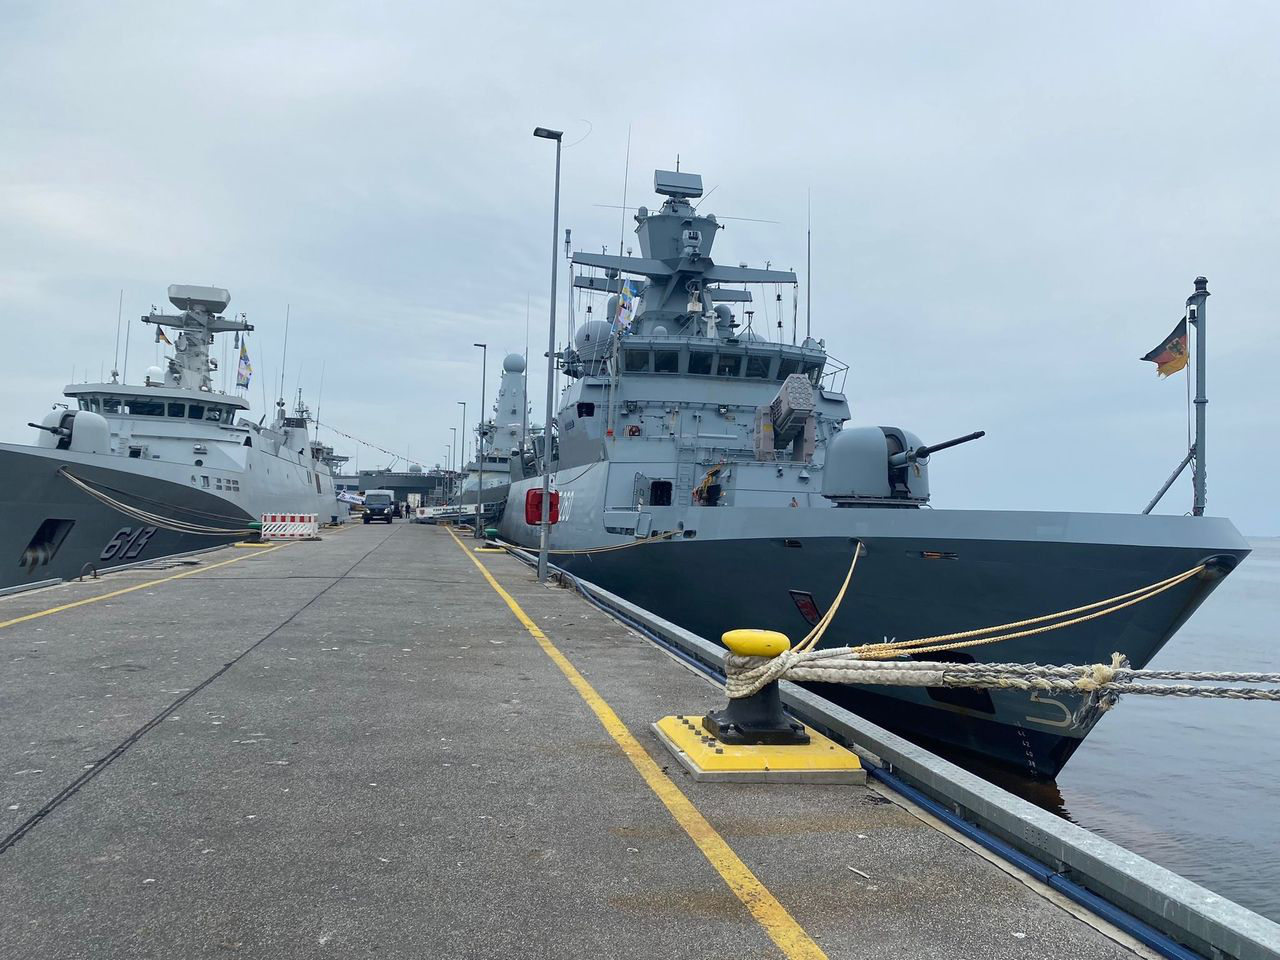 شاركت البحرية الملكية ضمن فعاليات أسبوع كيل الفلكلوري بألمانيا مع مجوعة من القطع البحرية من أنحاء مختلفة من العالم